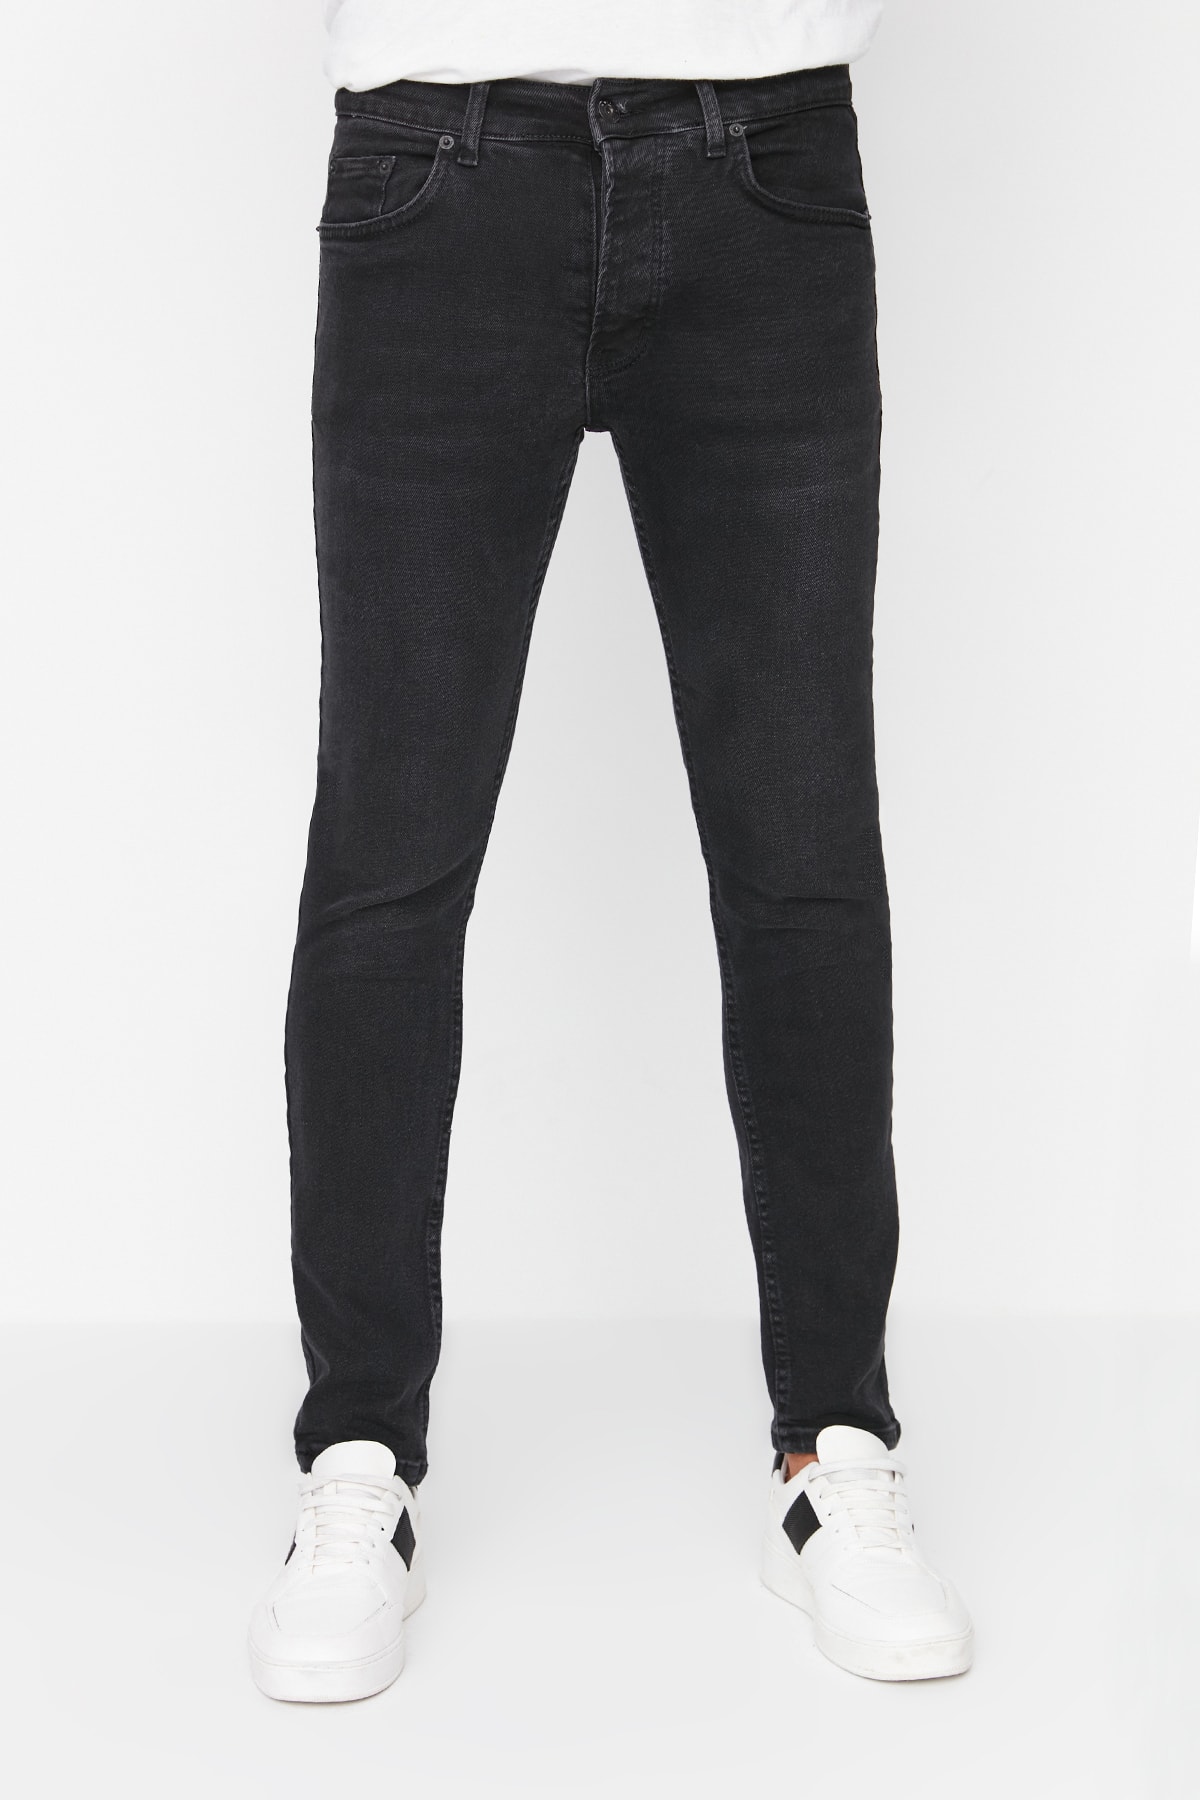 Джинсы Trendyol скинни, черный джинсы скинни размер 44 29 черный